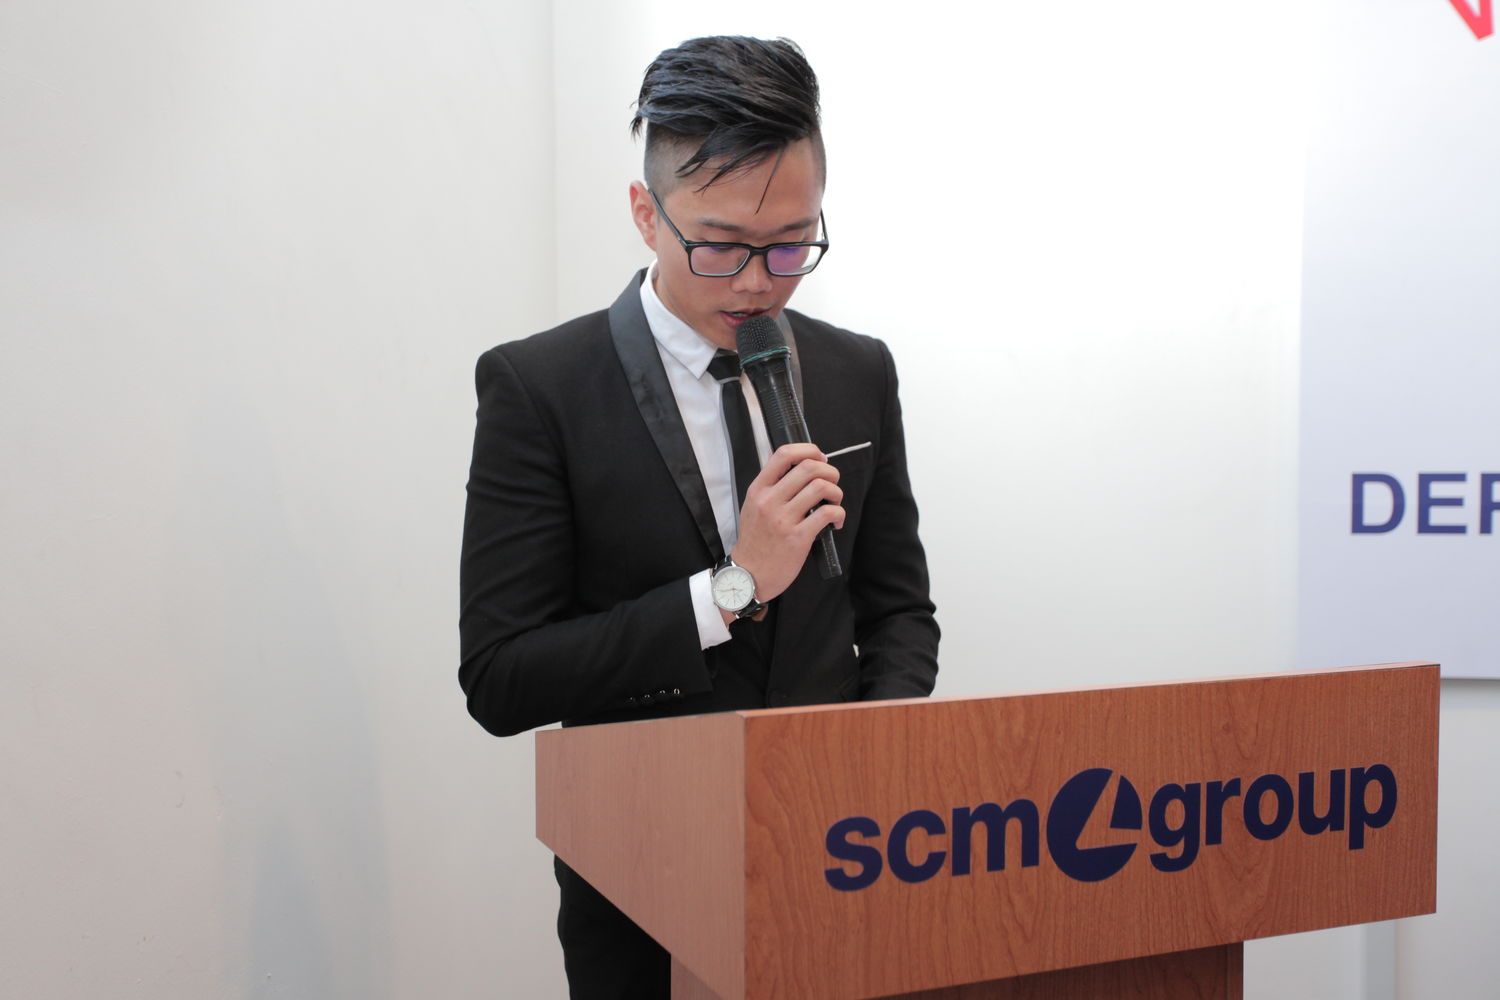 Впечатляющее открытие филиала SCM Group в Малайзии, укрепление позиций группы компаний в странах Юго-Восточной Азии